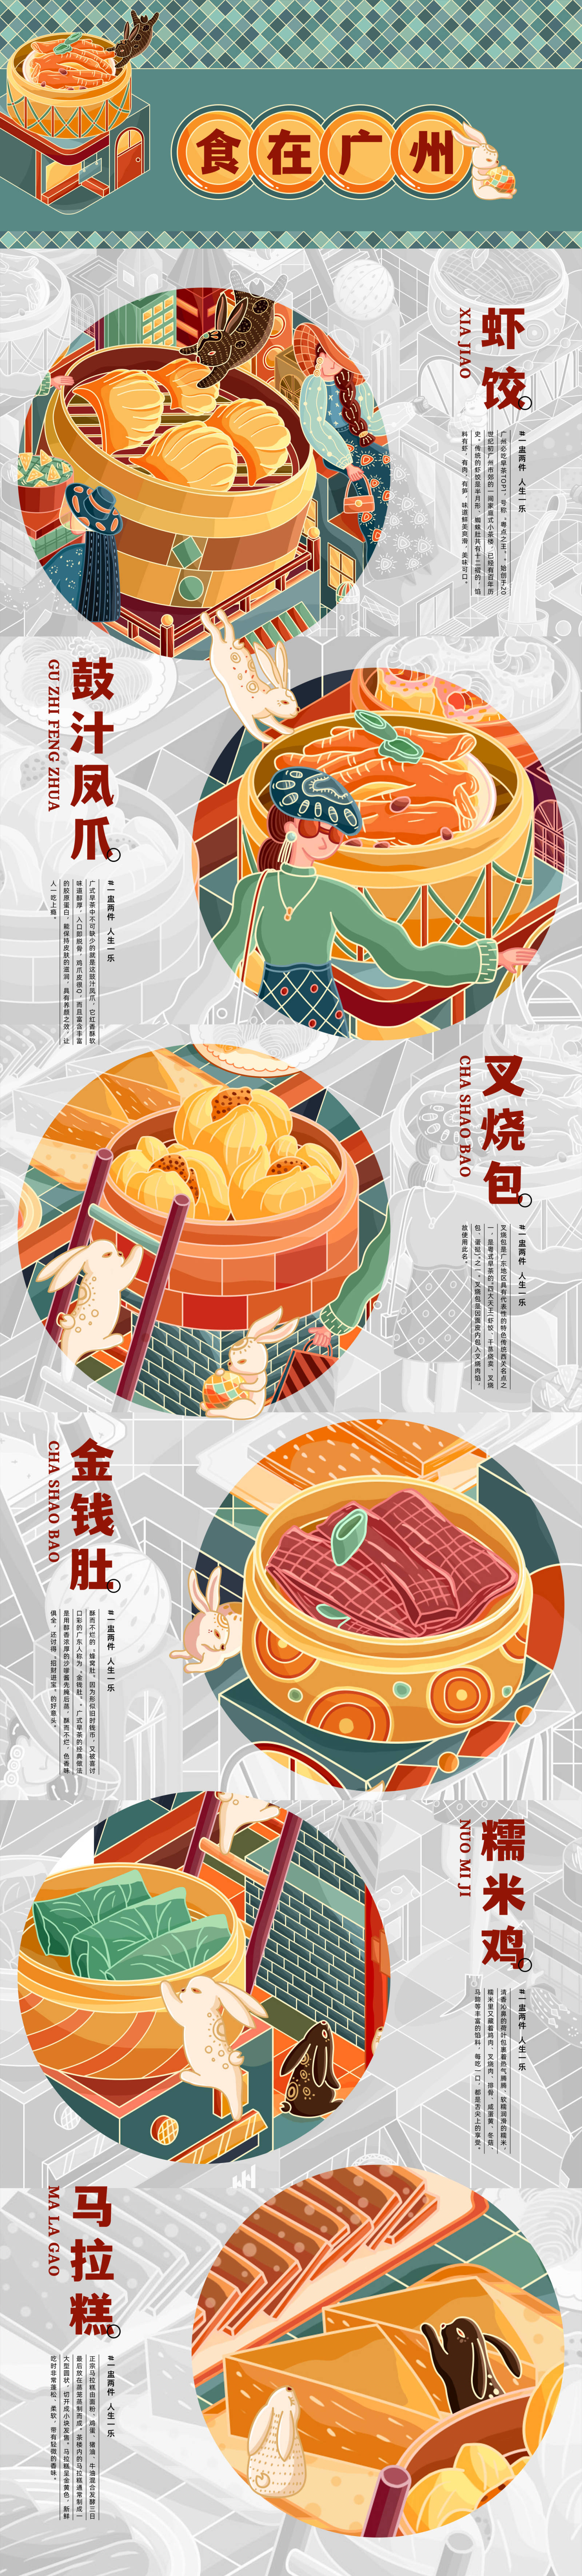 广州叹茶城KV品牌餐饮插画设计-第3张